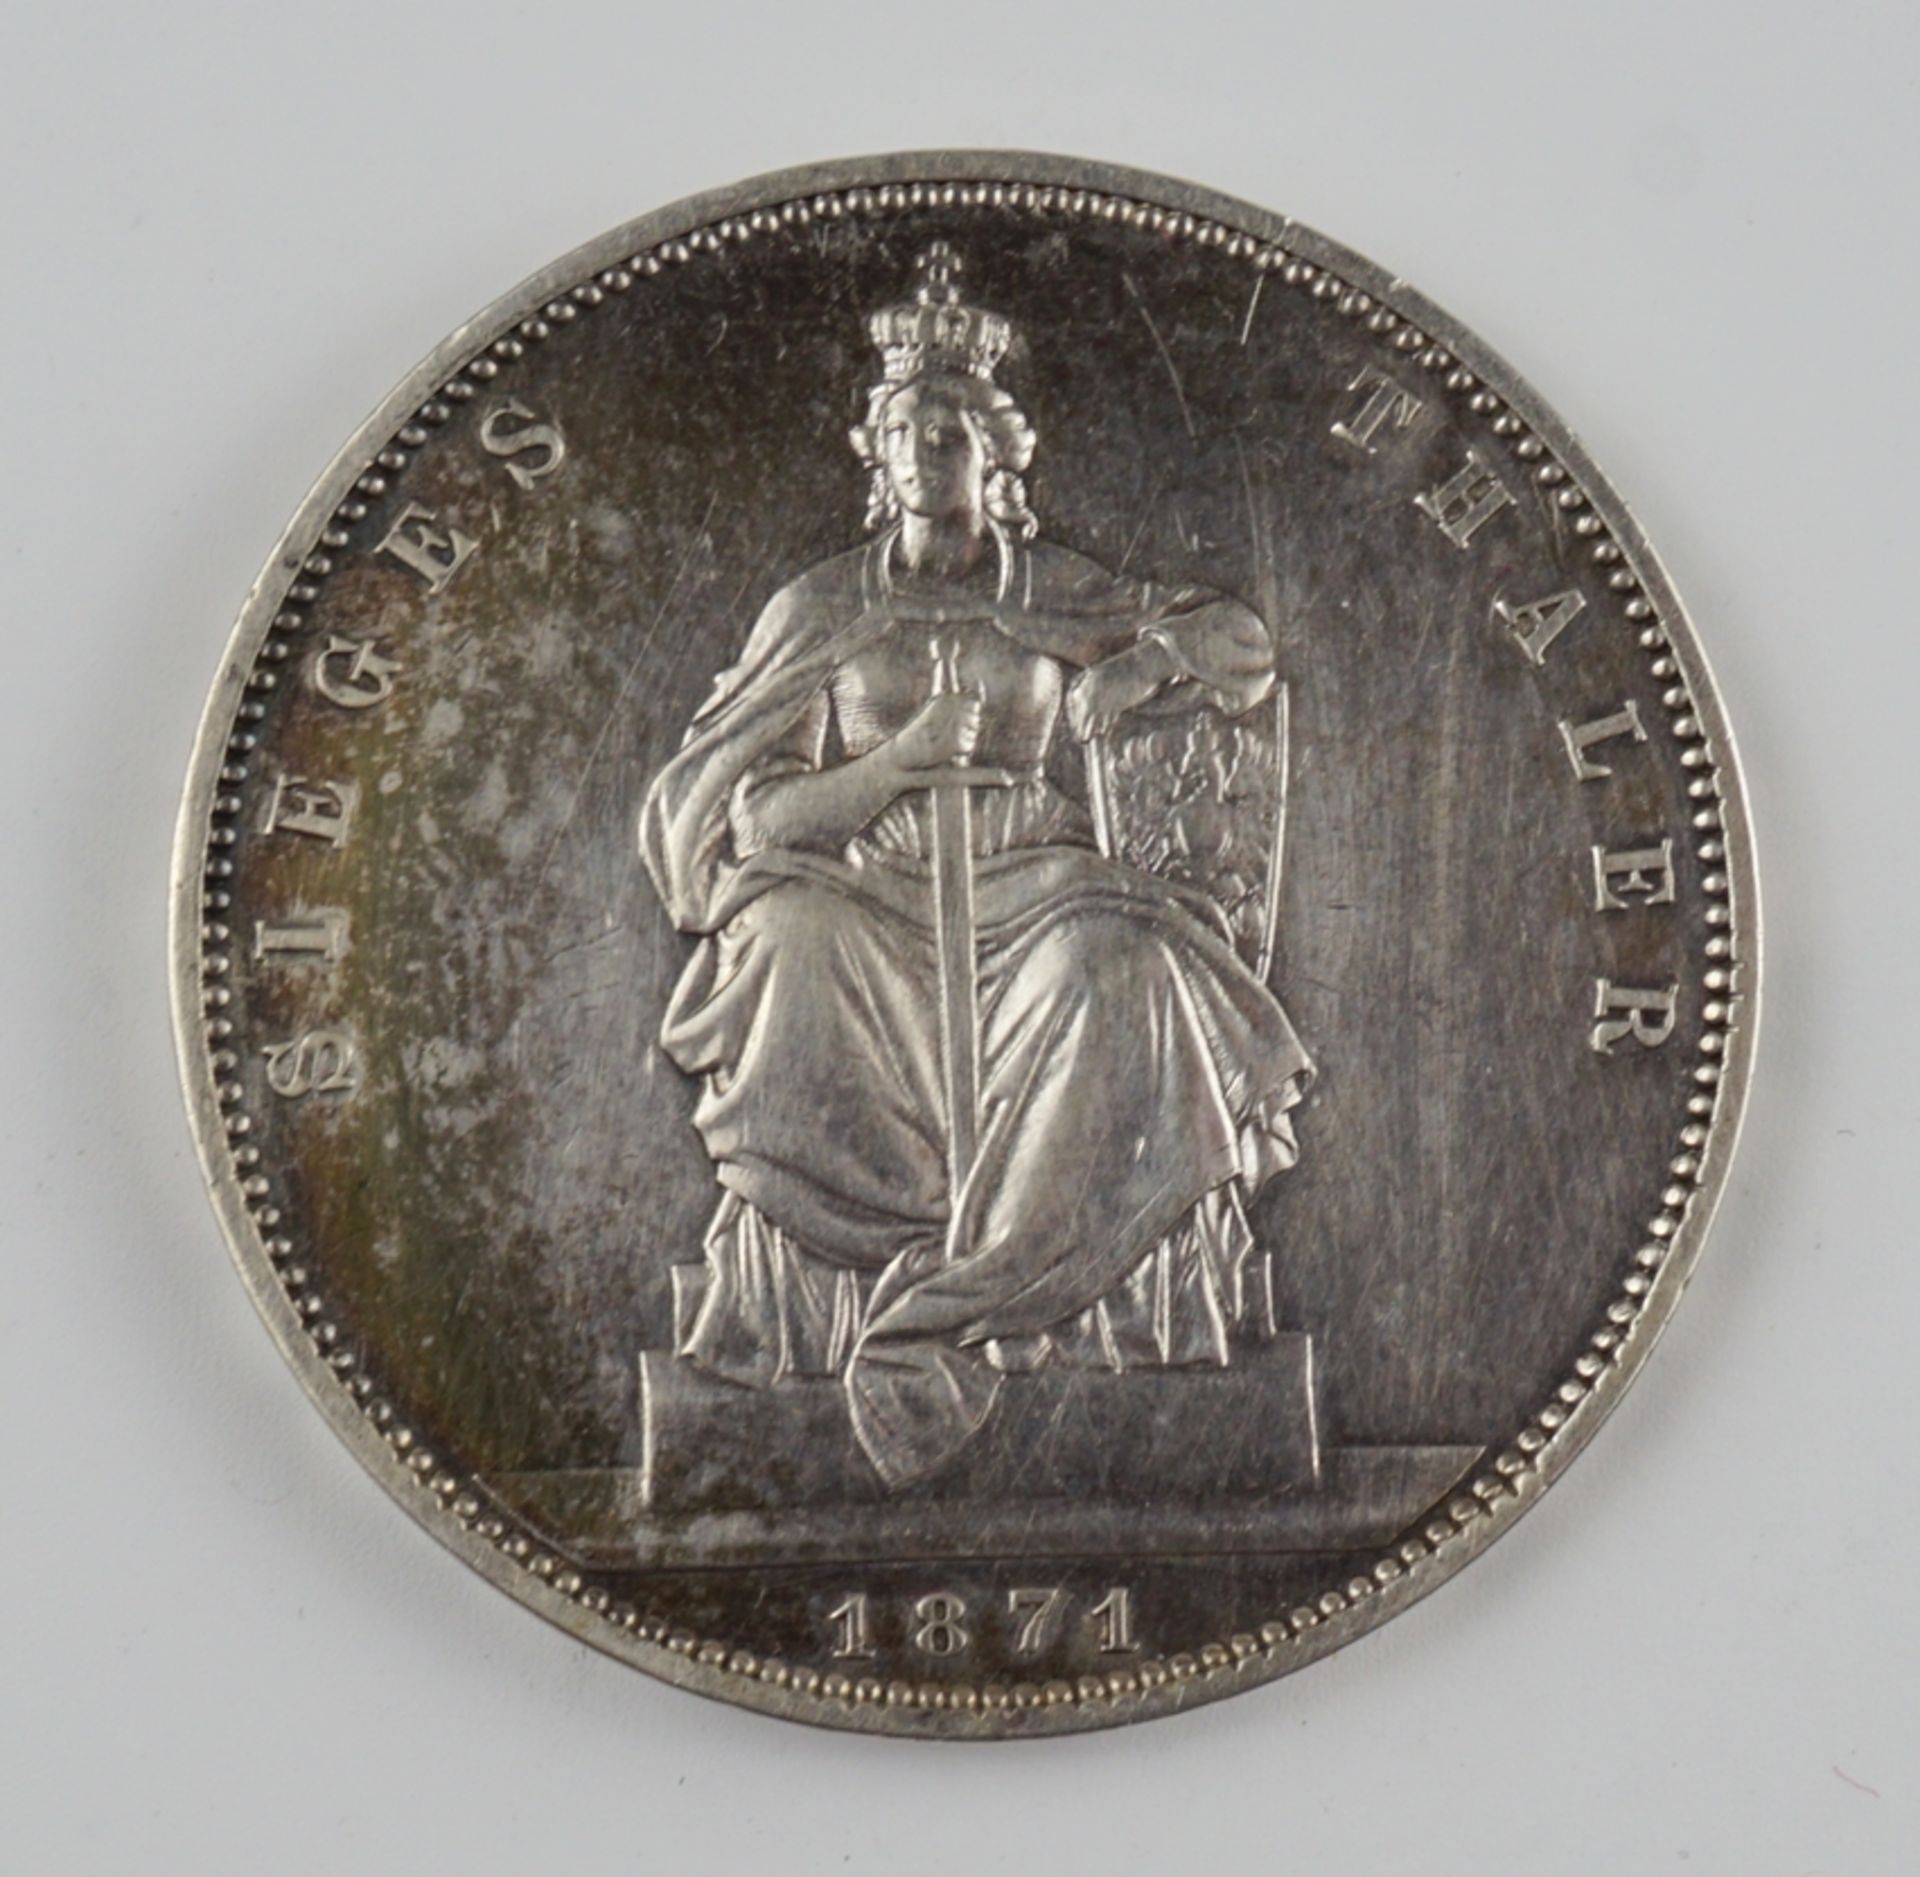 Siegesthaler 1871, Gedenkmünze, Sieg über Frankreich, Wilhelm, König von Preussen, Silber